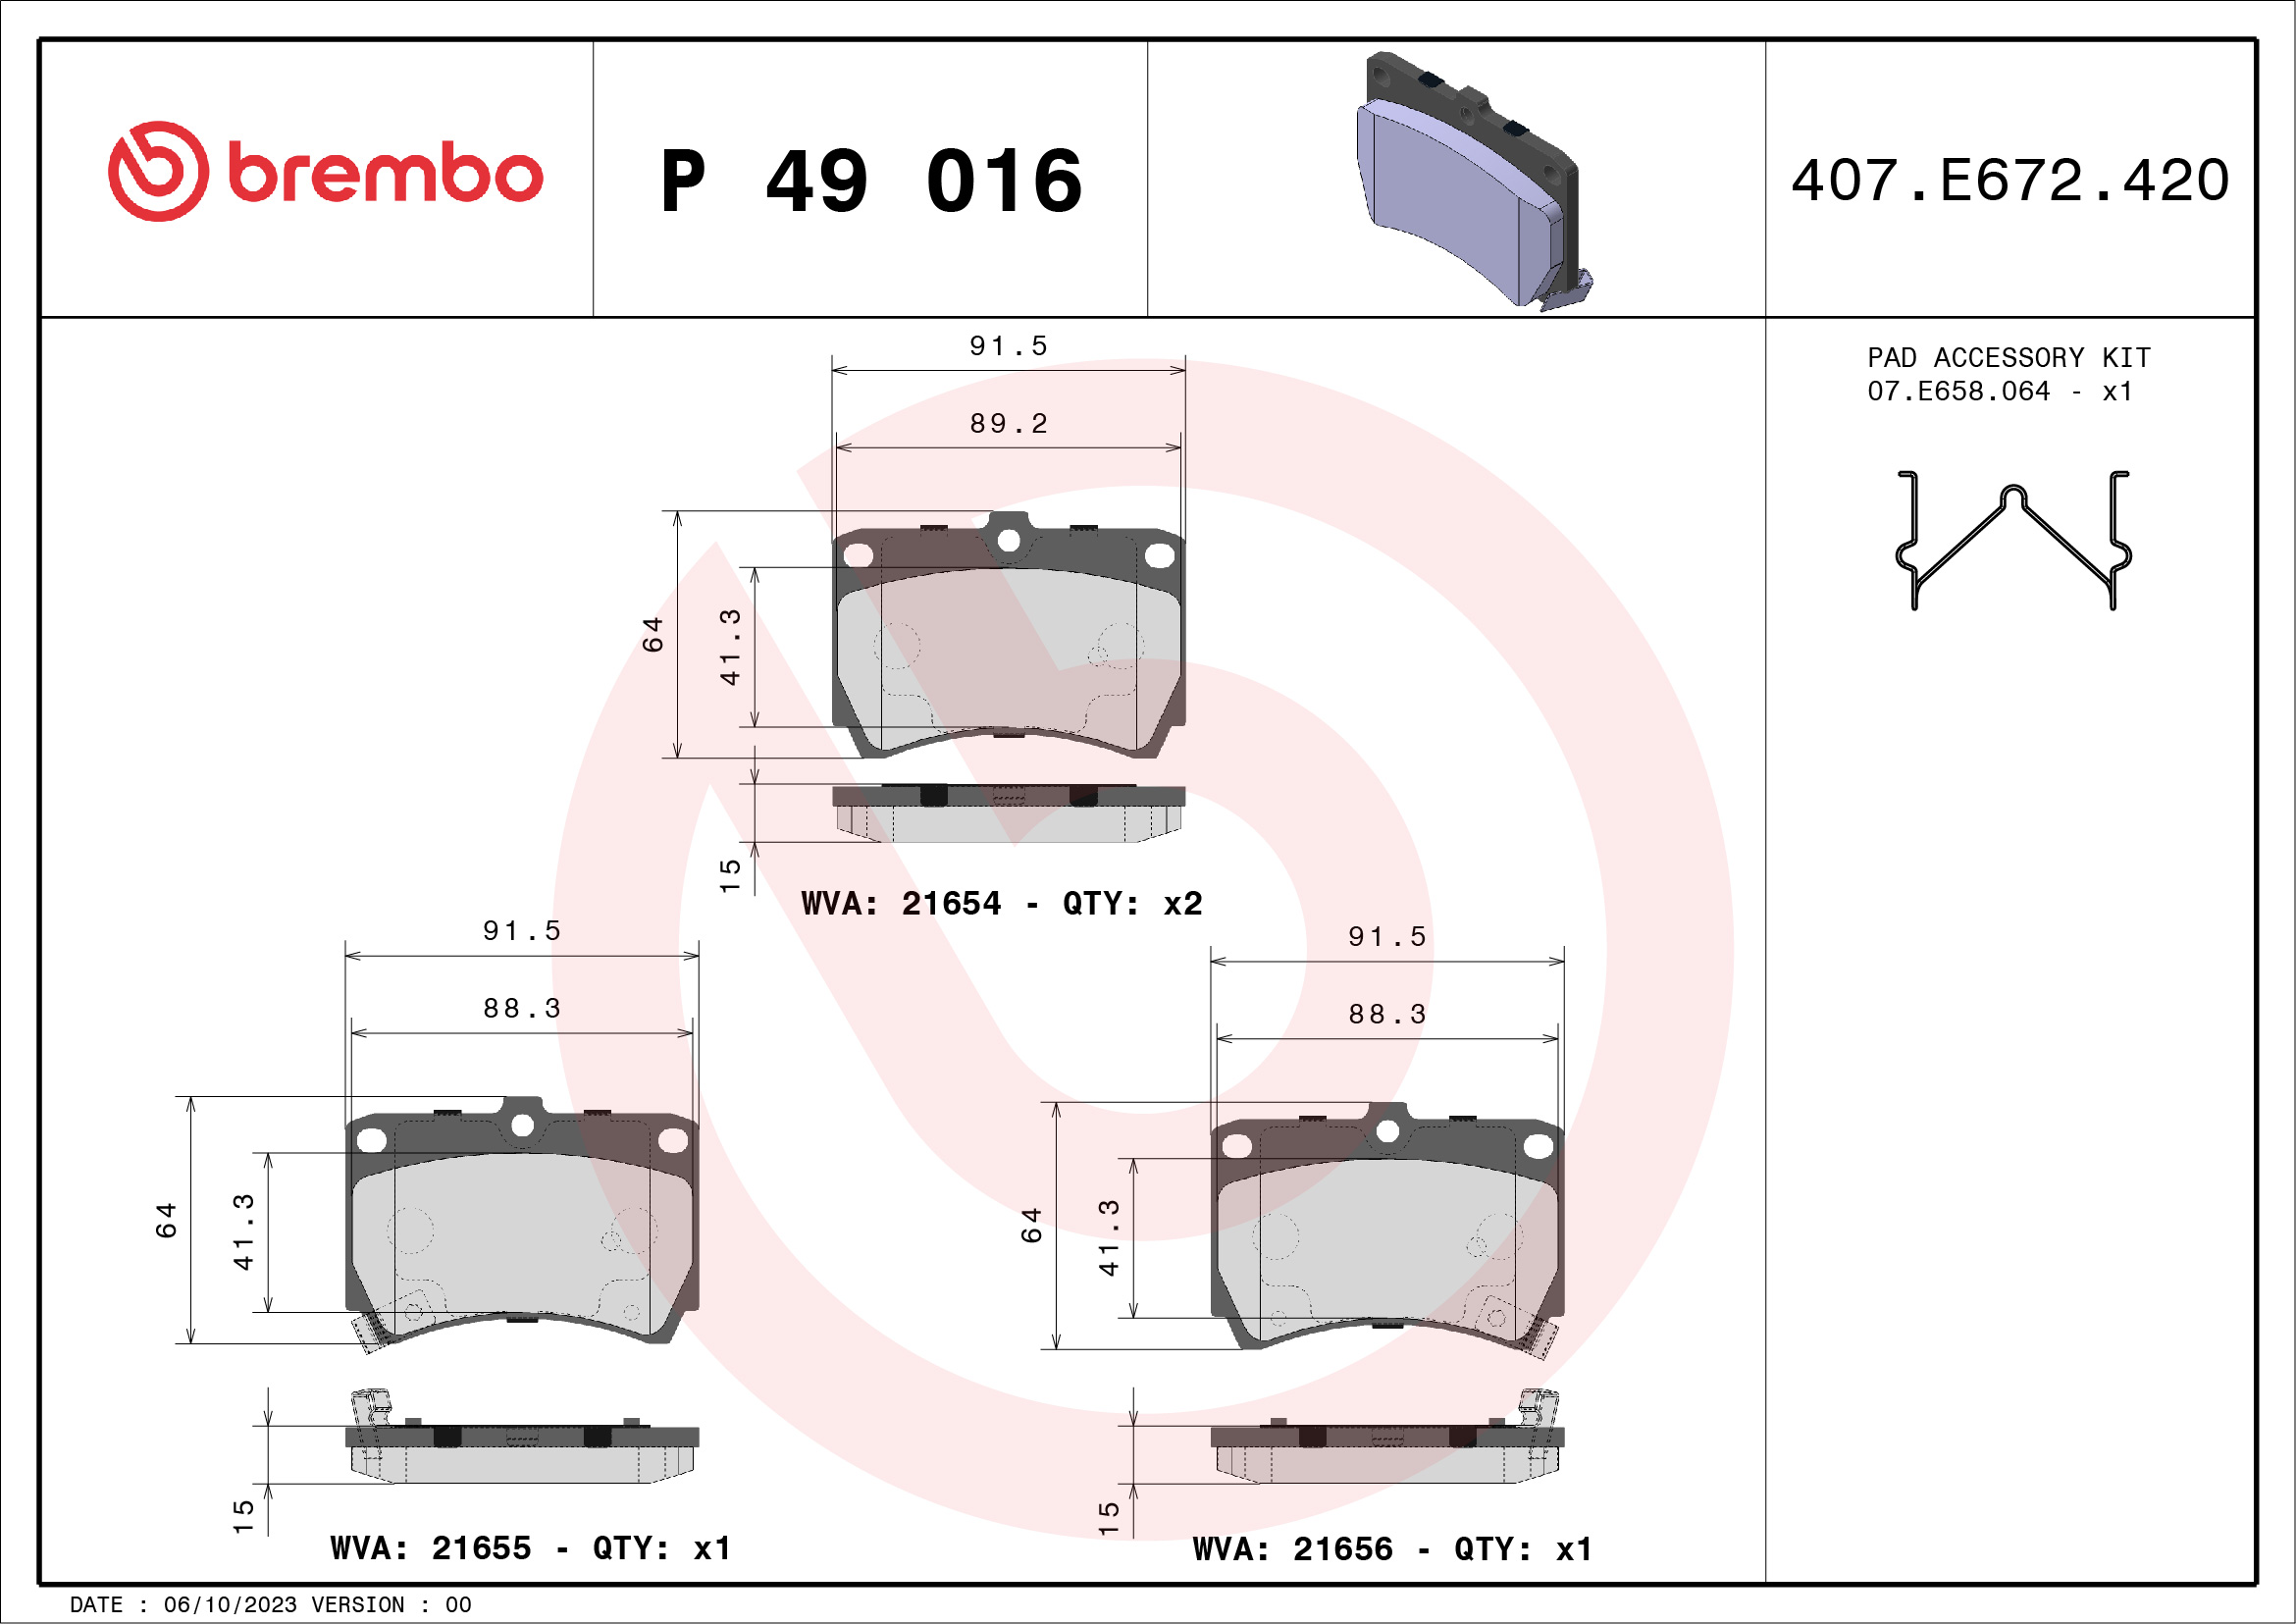 BREMBO P 49 016 Kit...